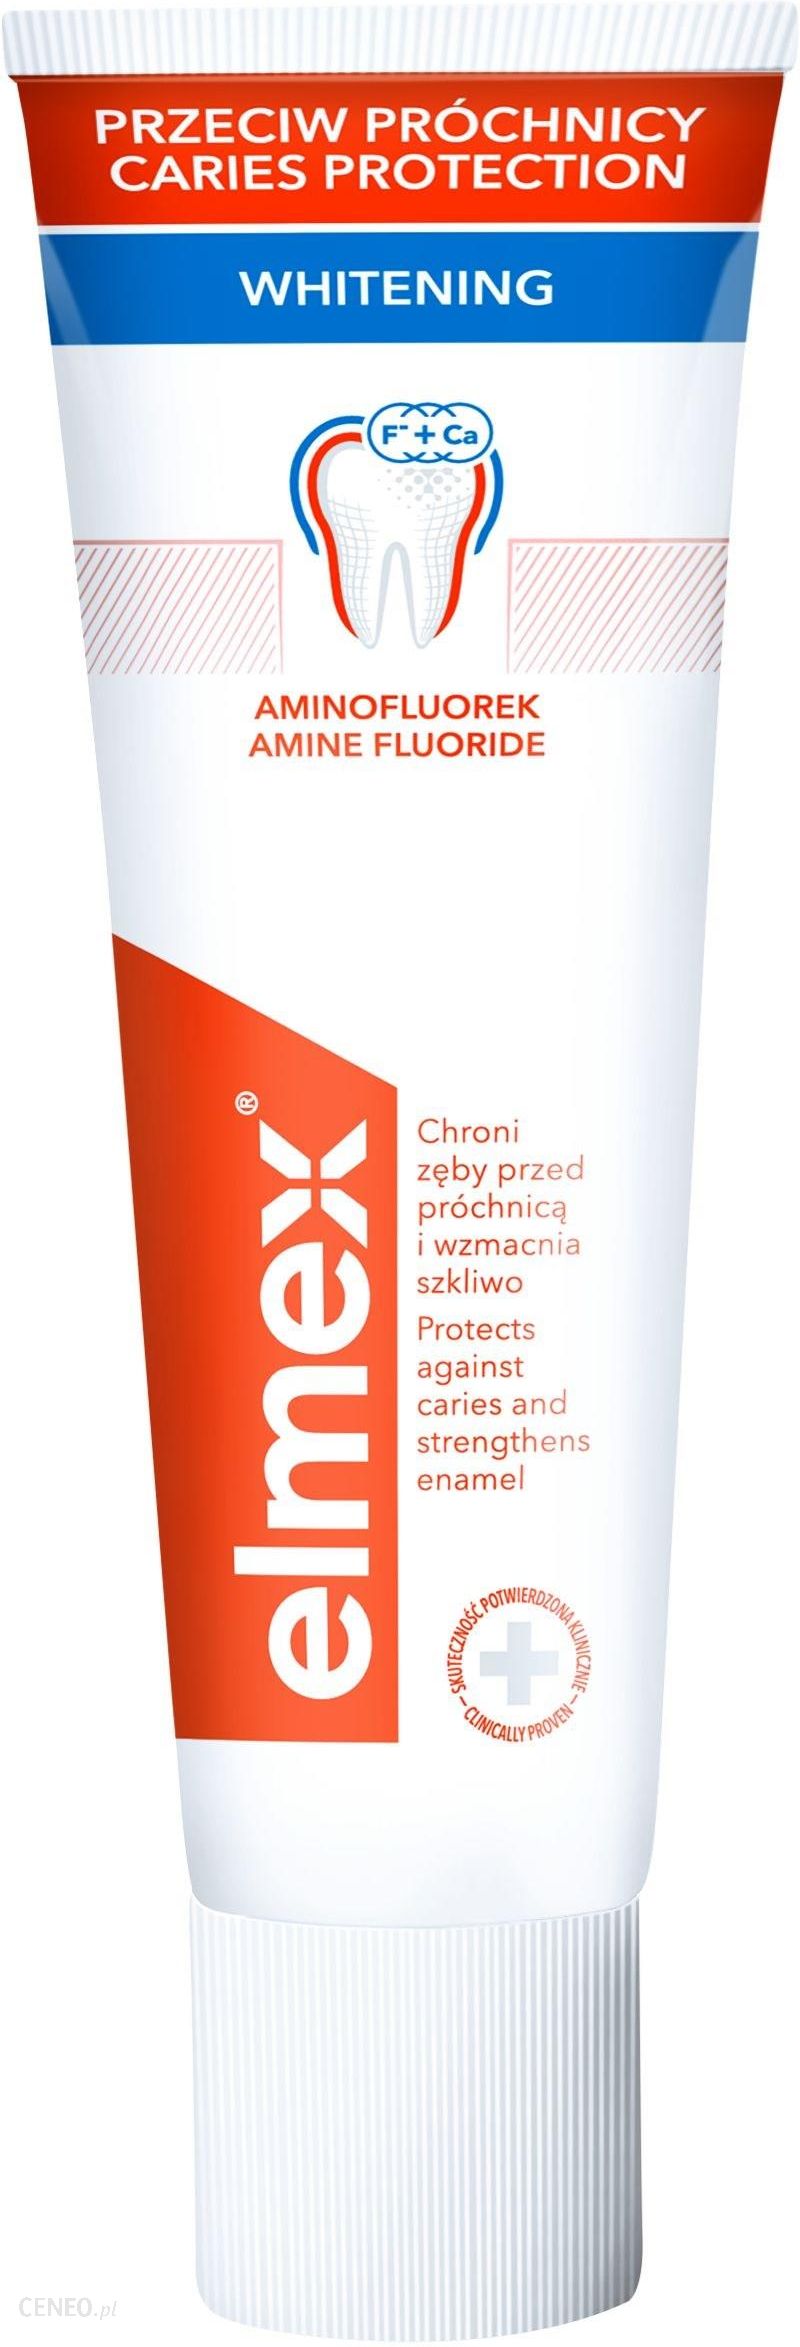 elmex Przeciw Próchnicy Whitening delikatnie wybielająca pasta do zębów przeciw próchnicy z aminofluorkiem 75 ml